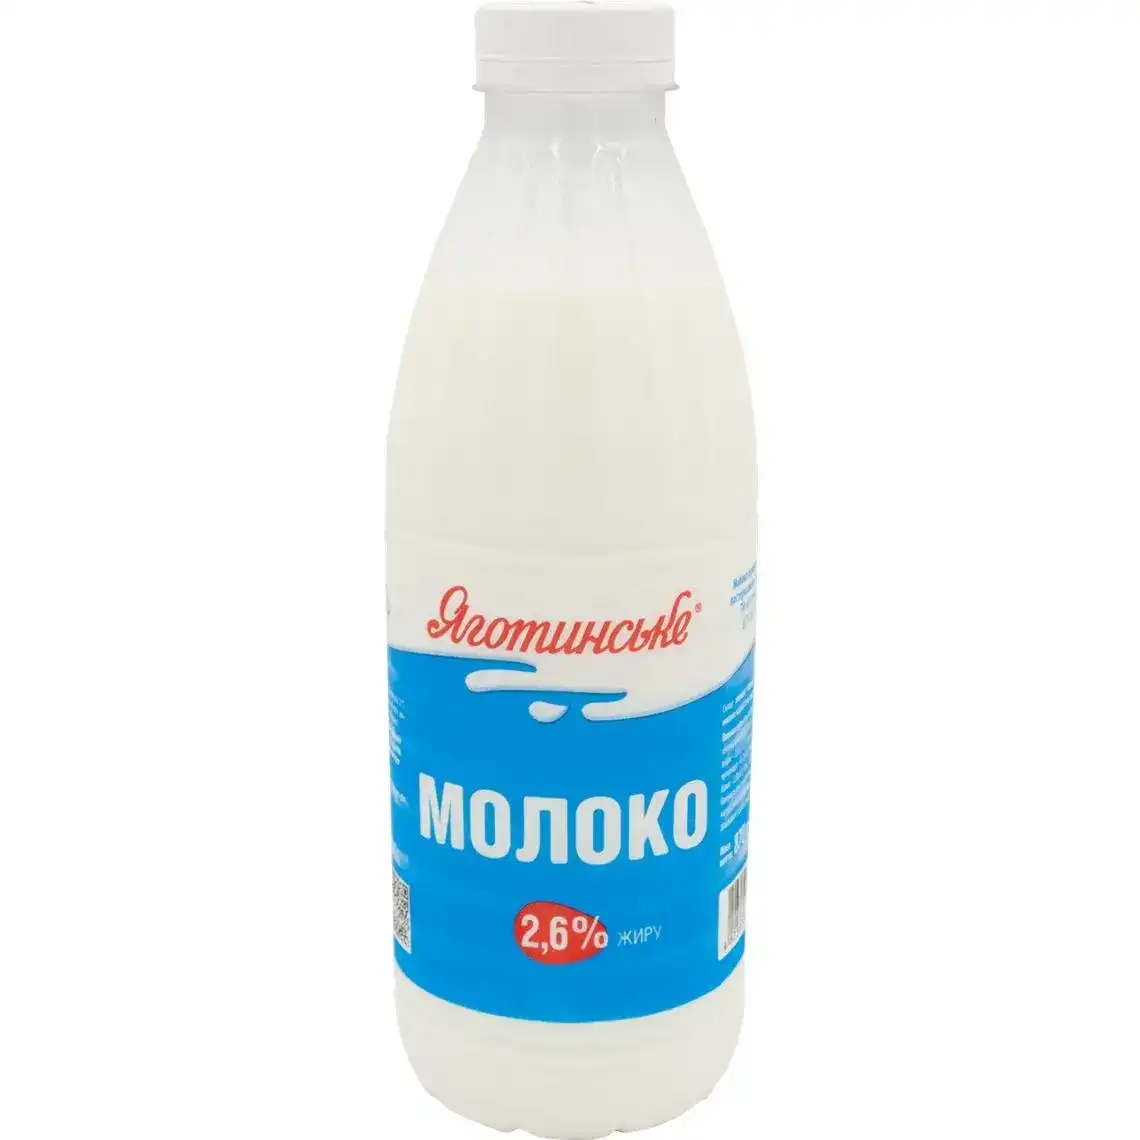 Фото 1 - Молоко Яготинське 2.6% пастеризованное в бутылке 870 г